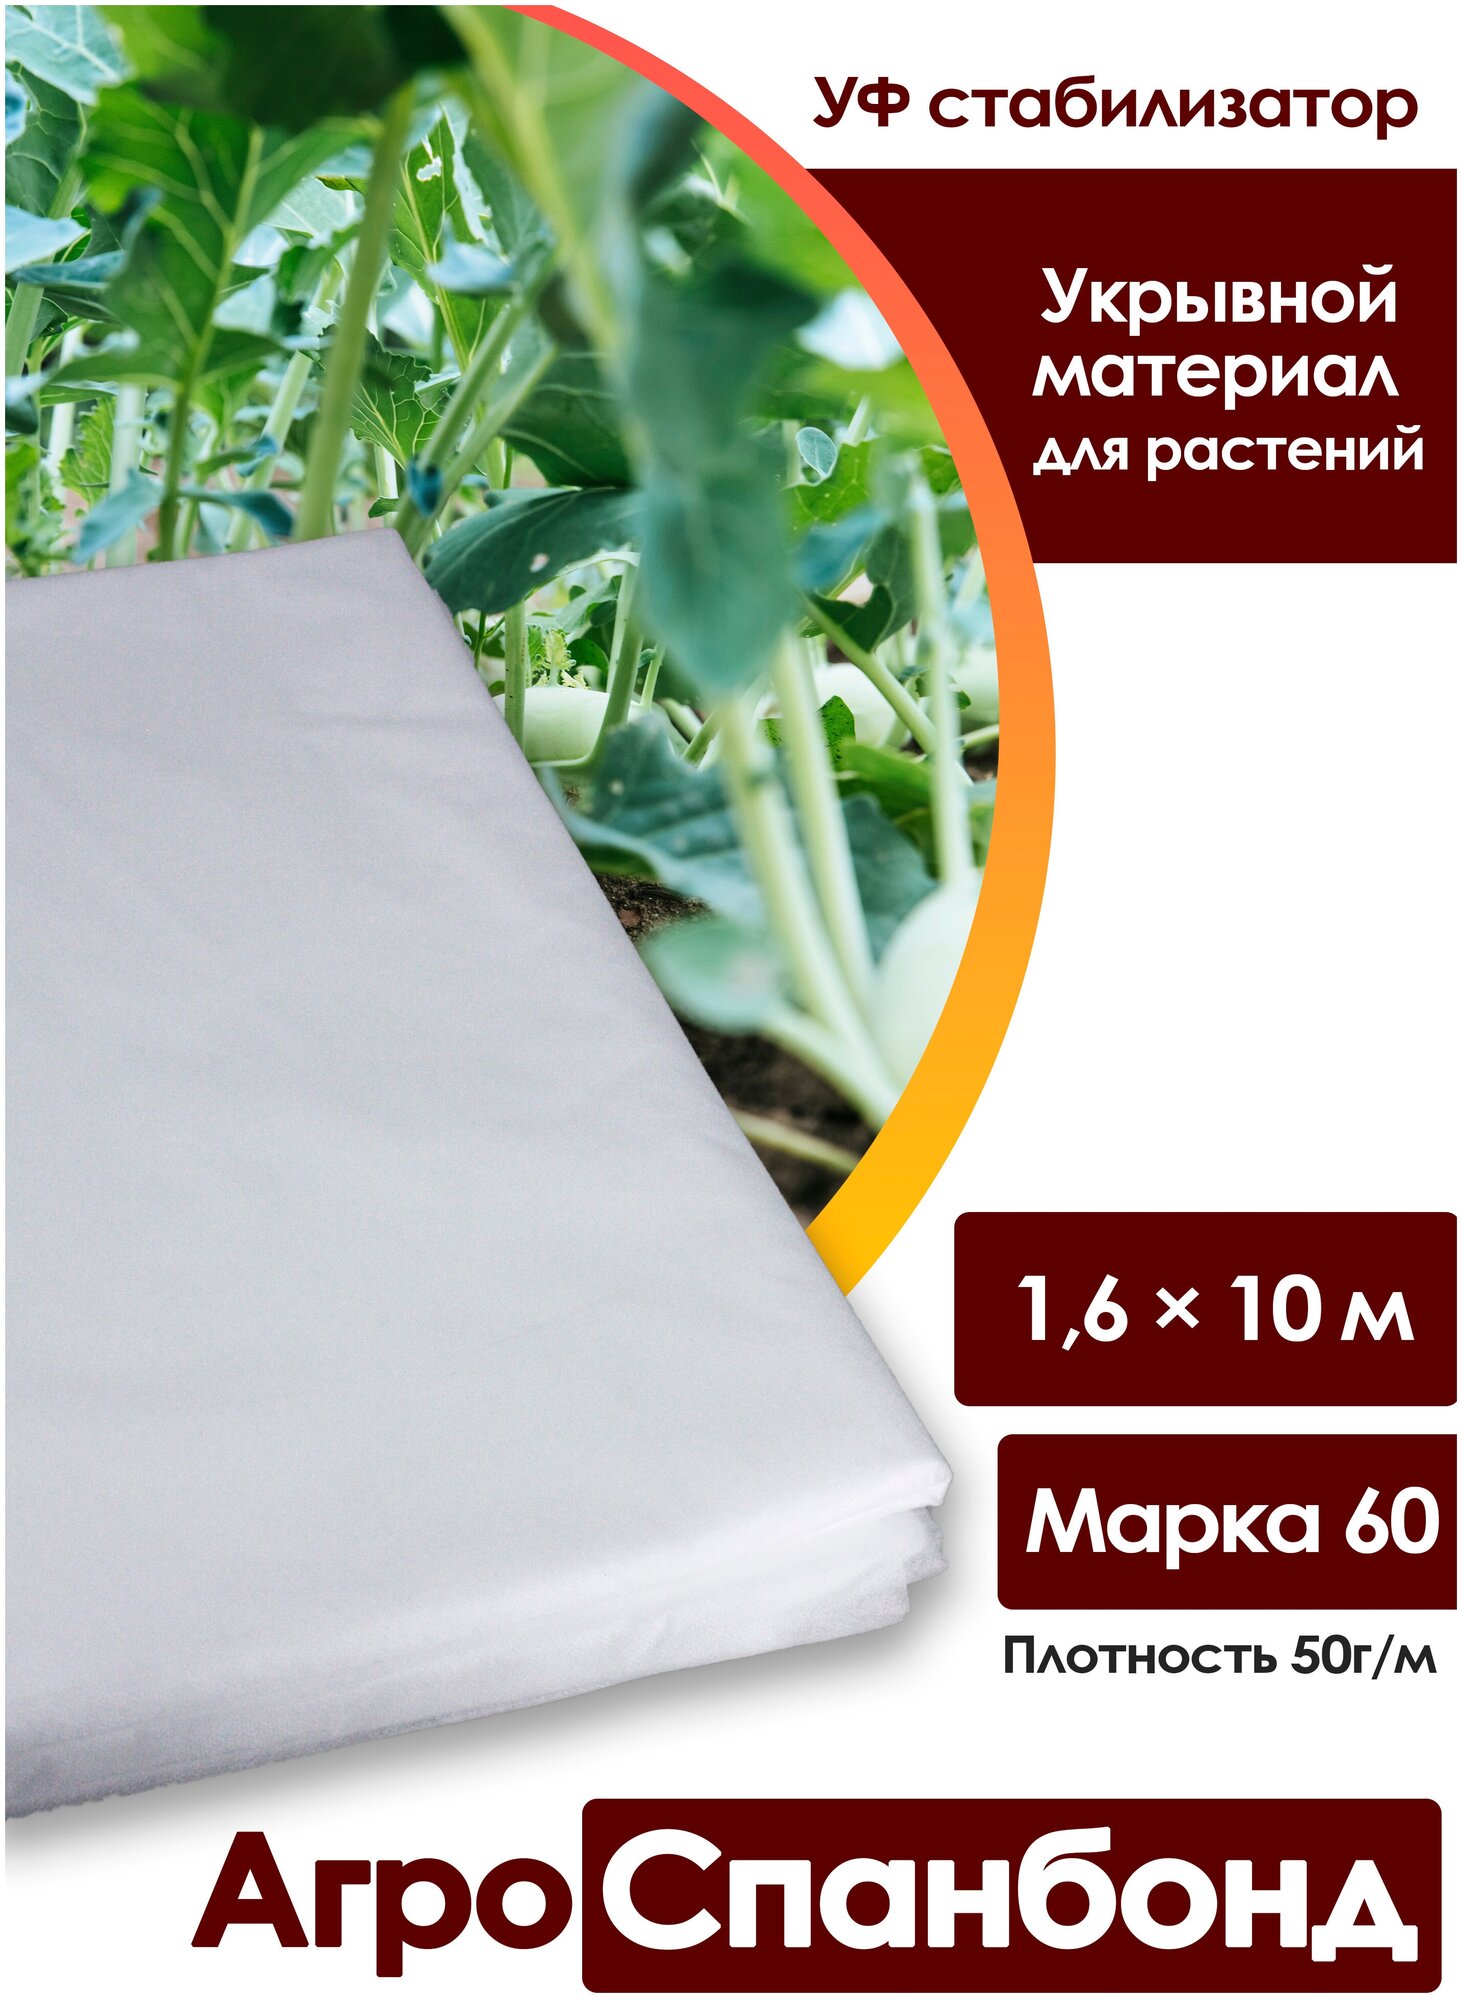 Body Pillow Спанбонд укрывной 1,6х10 м плотностью 50 г/м2, Марка "60" / Агротекстиль для теплиц, растений / Нетканый укрывной материал